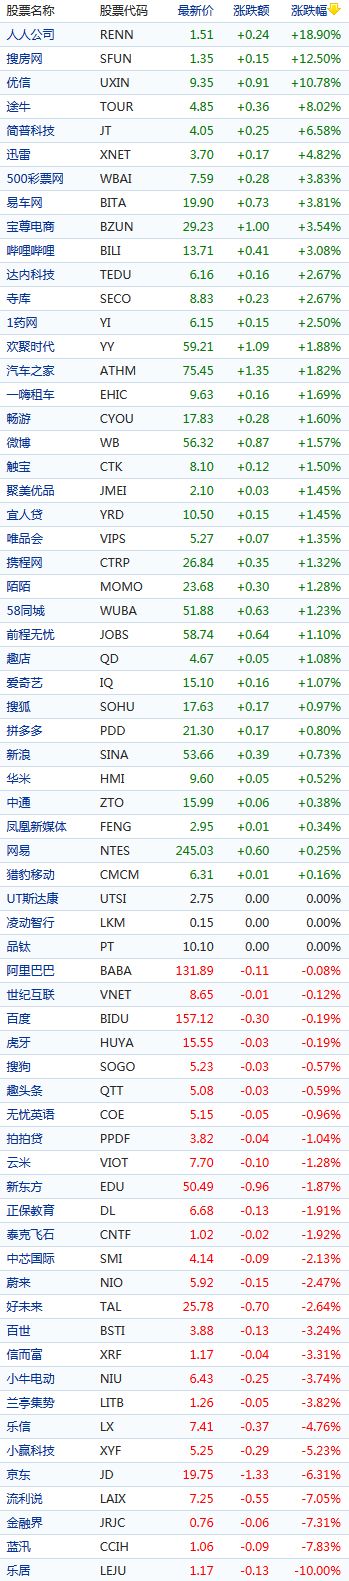 【虎嗅早报】刘强东事件后续影响来了：京东股价收跌超6%，一度逼近发行价